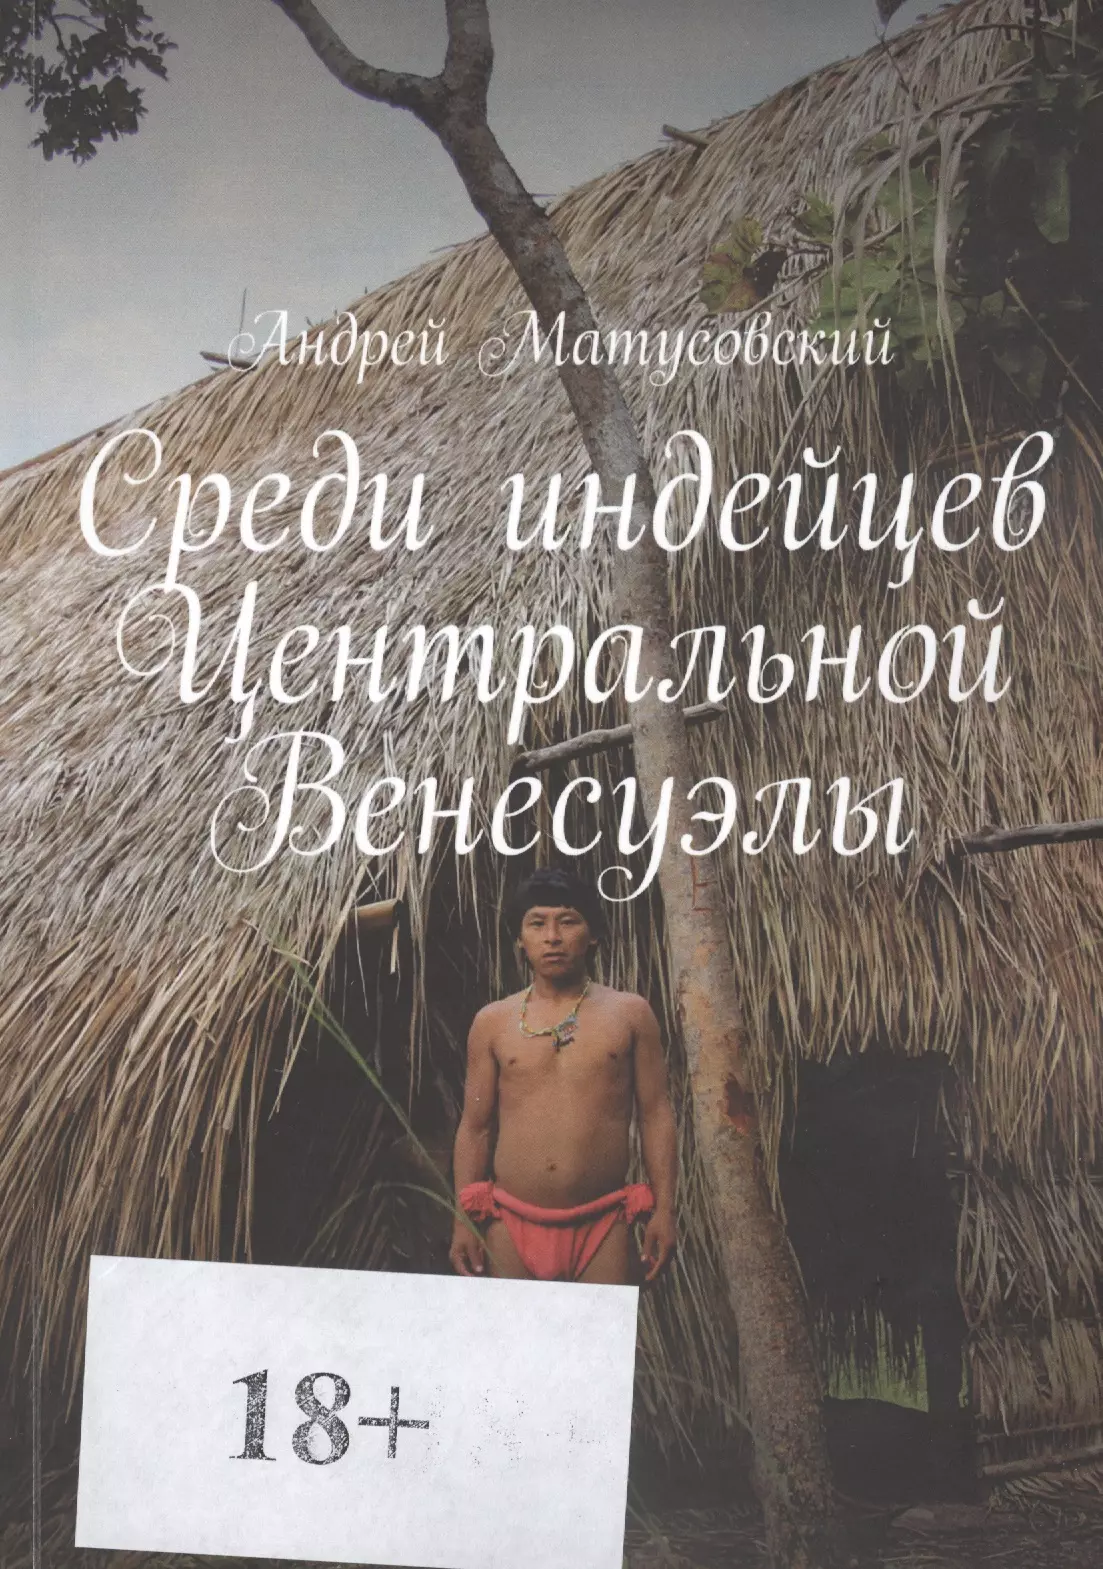 Матусовский Андрей - Среди индейцев Центральной Венесуэлы